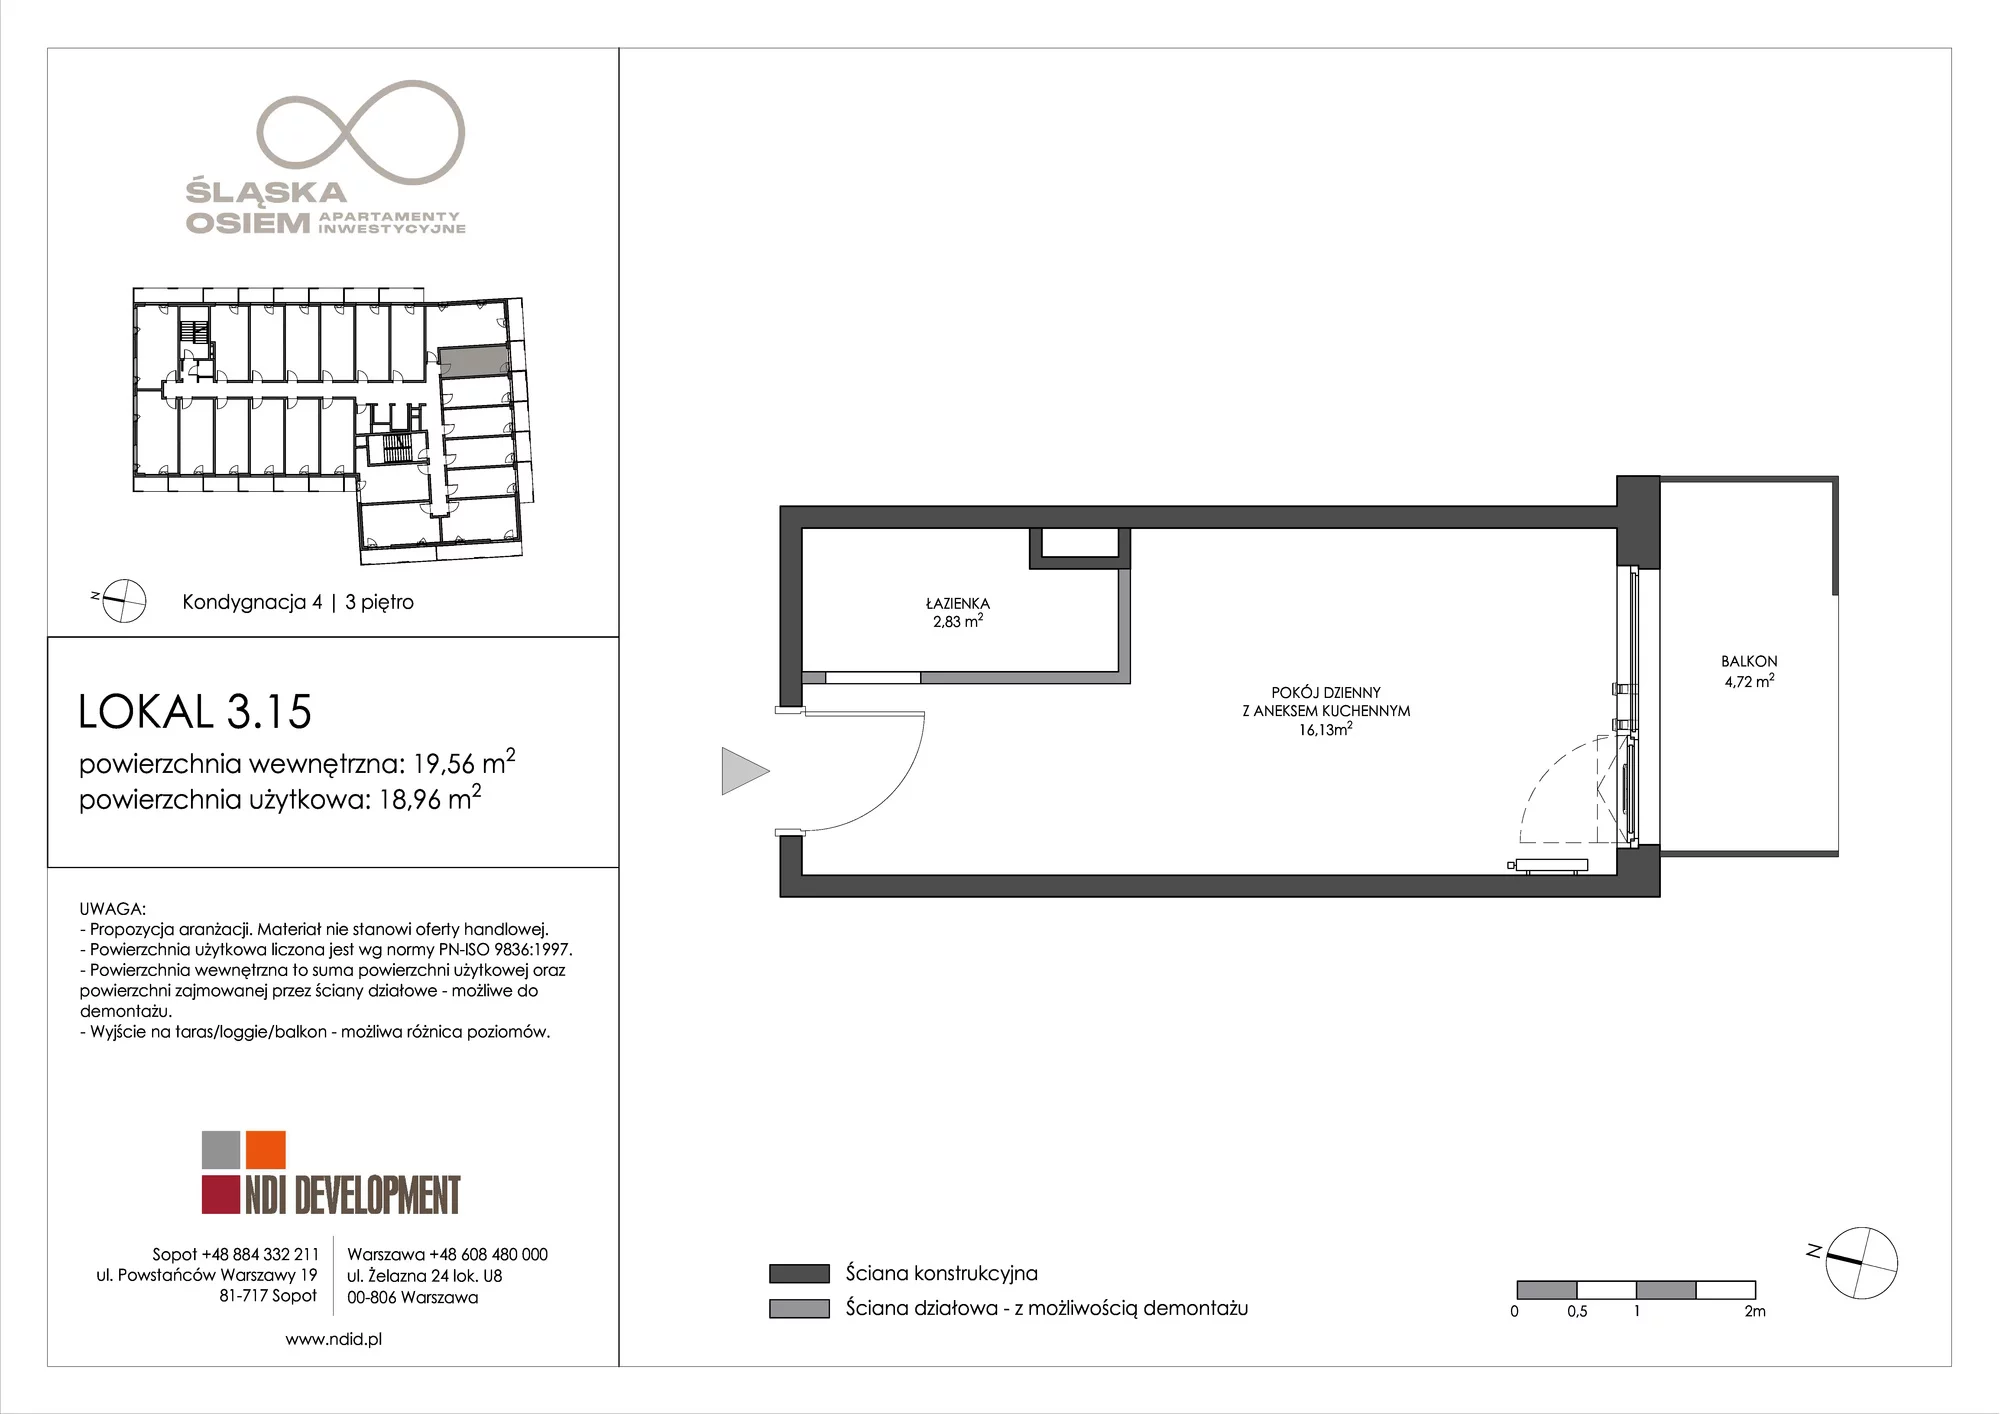 Apartament inwestycyjny 19,56 m², piętro 3, oferta nr 3.15, Śląska Osiem, Gdańsk, Przymorze, ul. Śląska 8